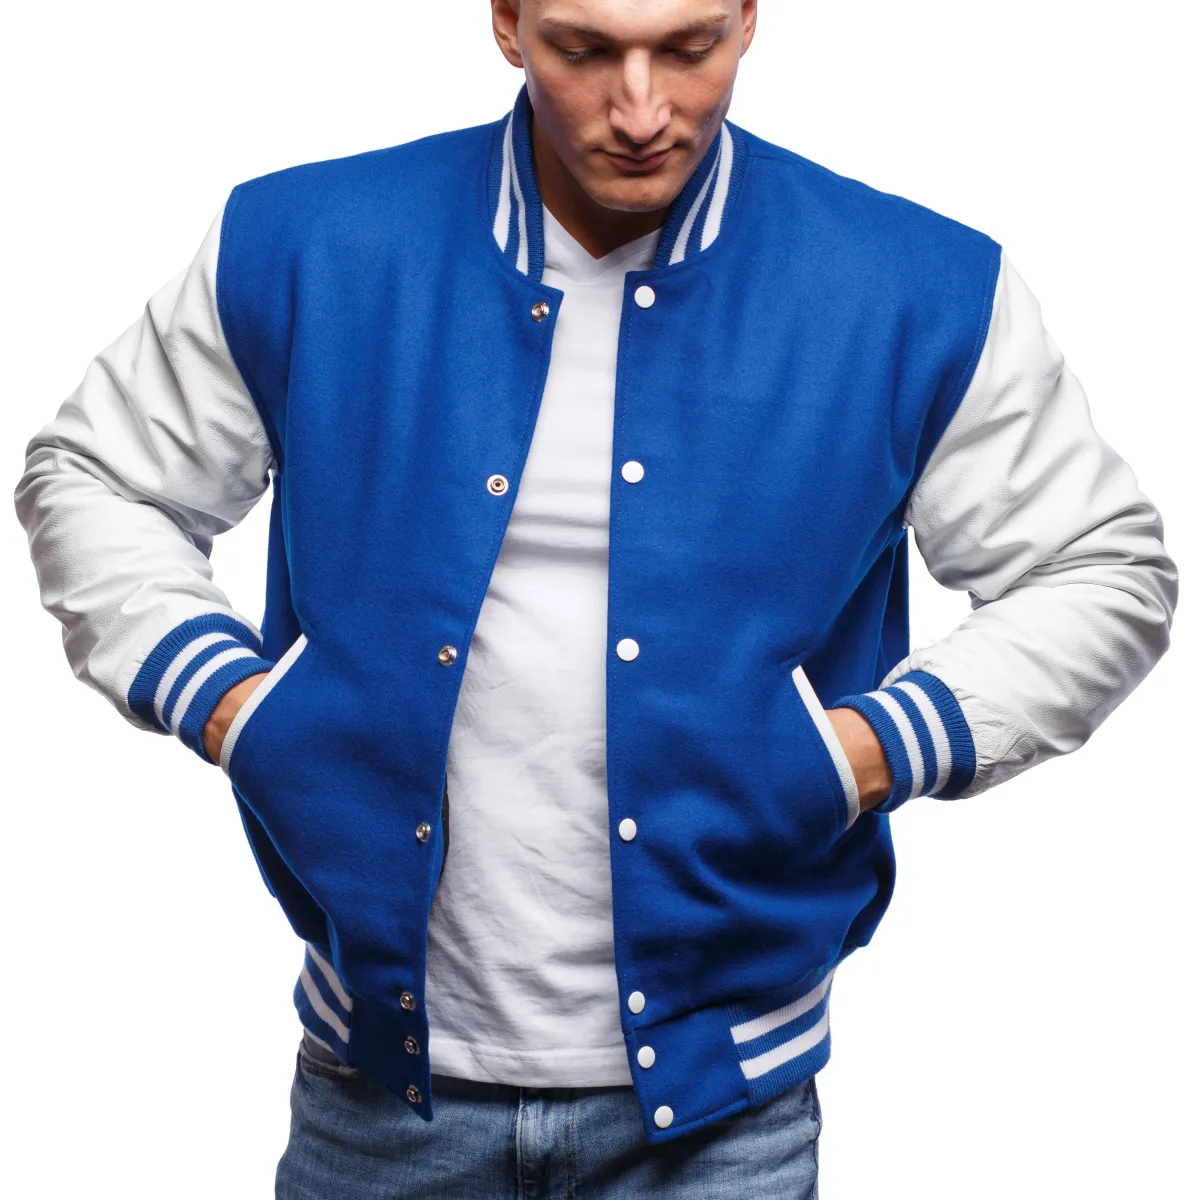 Premium Varsity Letterman Baseball Teal Blue wool /& Black Leather Sleeves Jacket